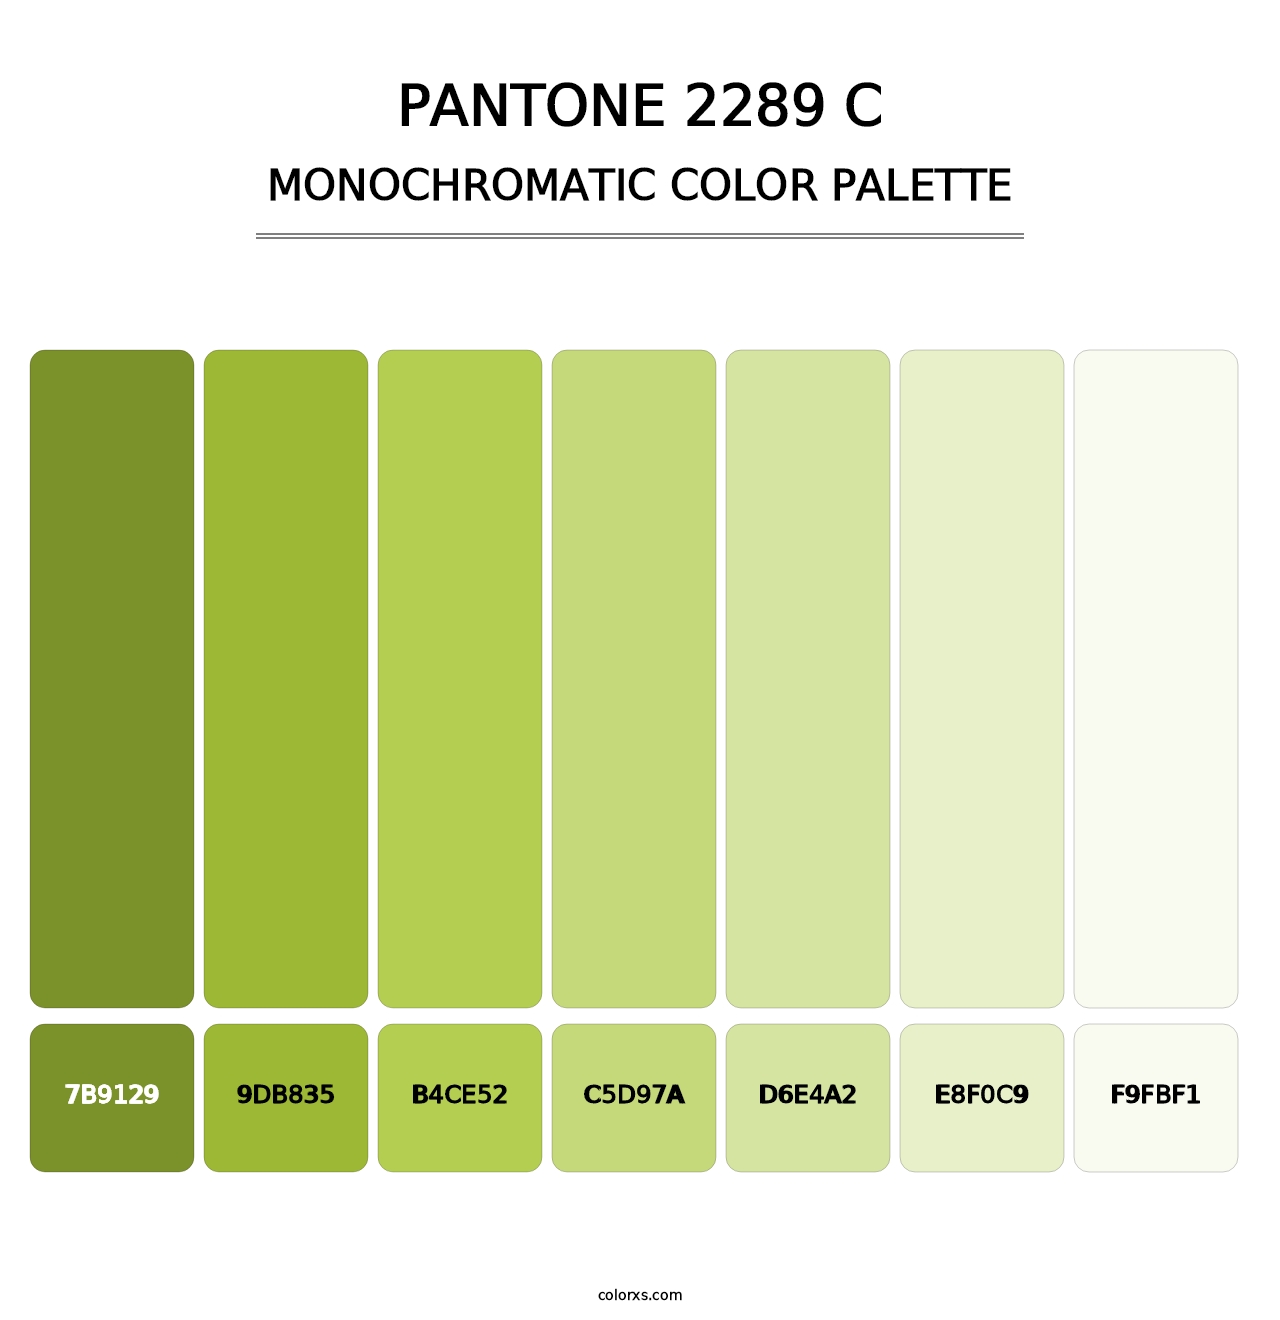 PANTONE 2289 C - Monochromatic Color Palette